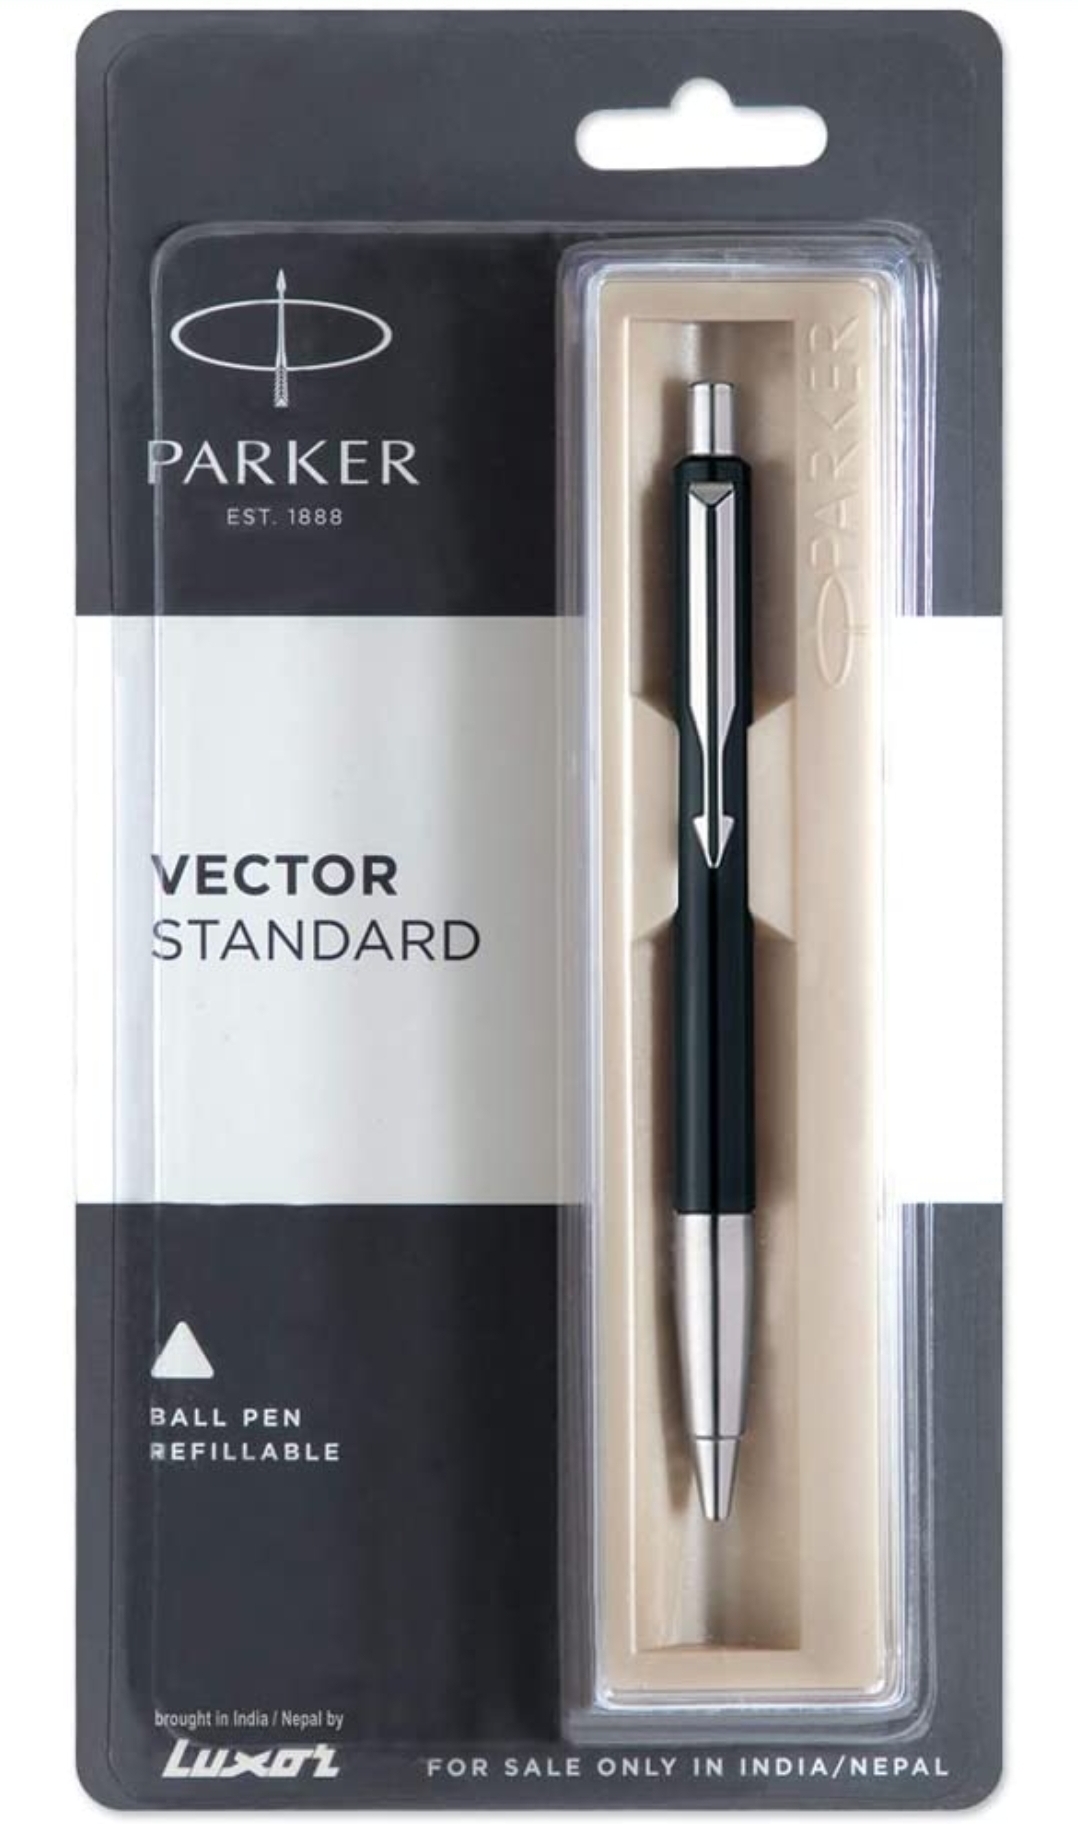 Parker Vector Standard Chrome Trim Ball Pen (Pack of 1) Black